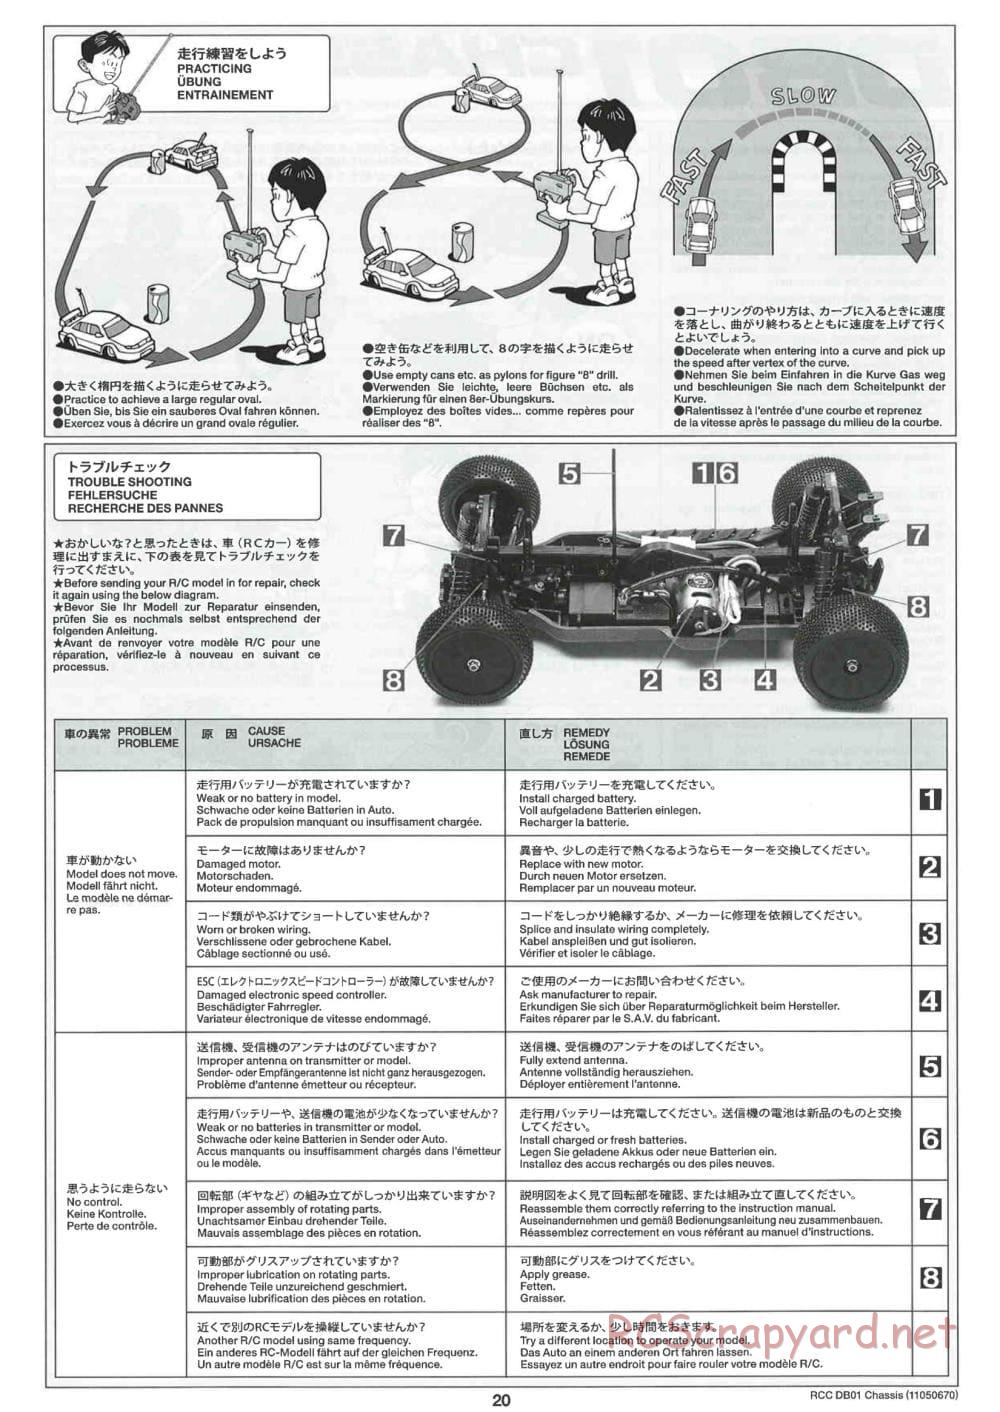 Tamiya - DB-01 Chassis - Manual - Page 20